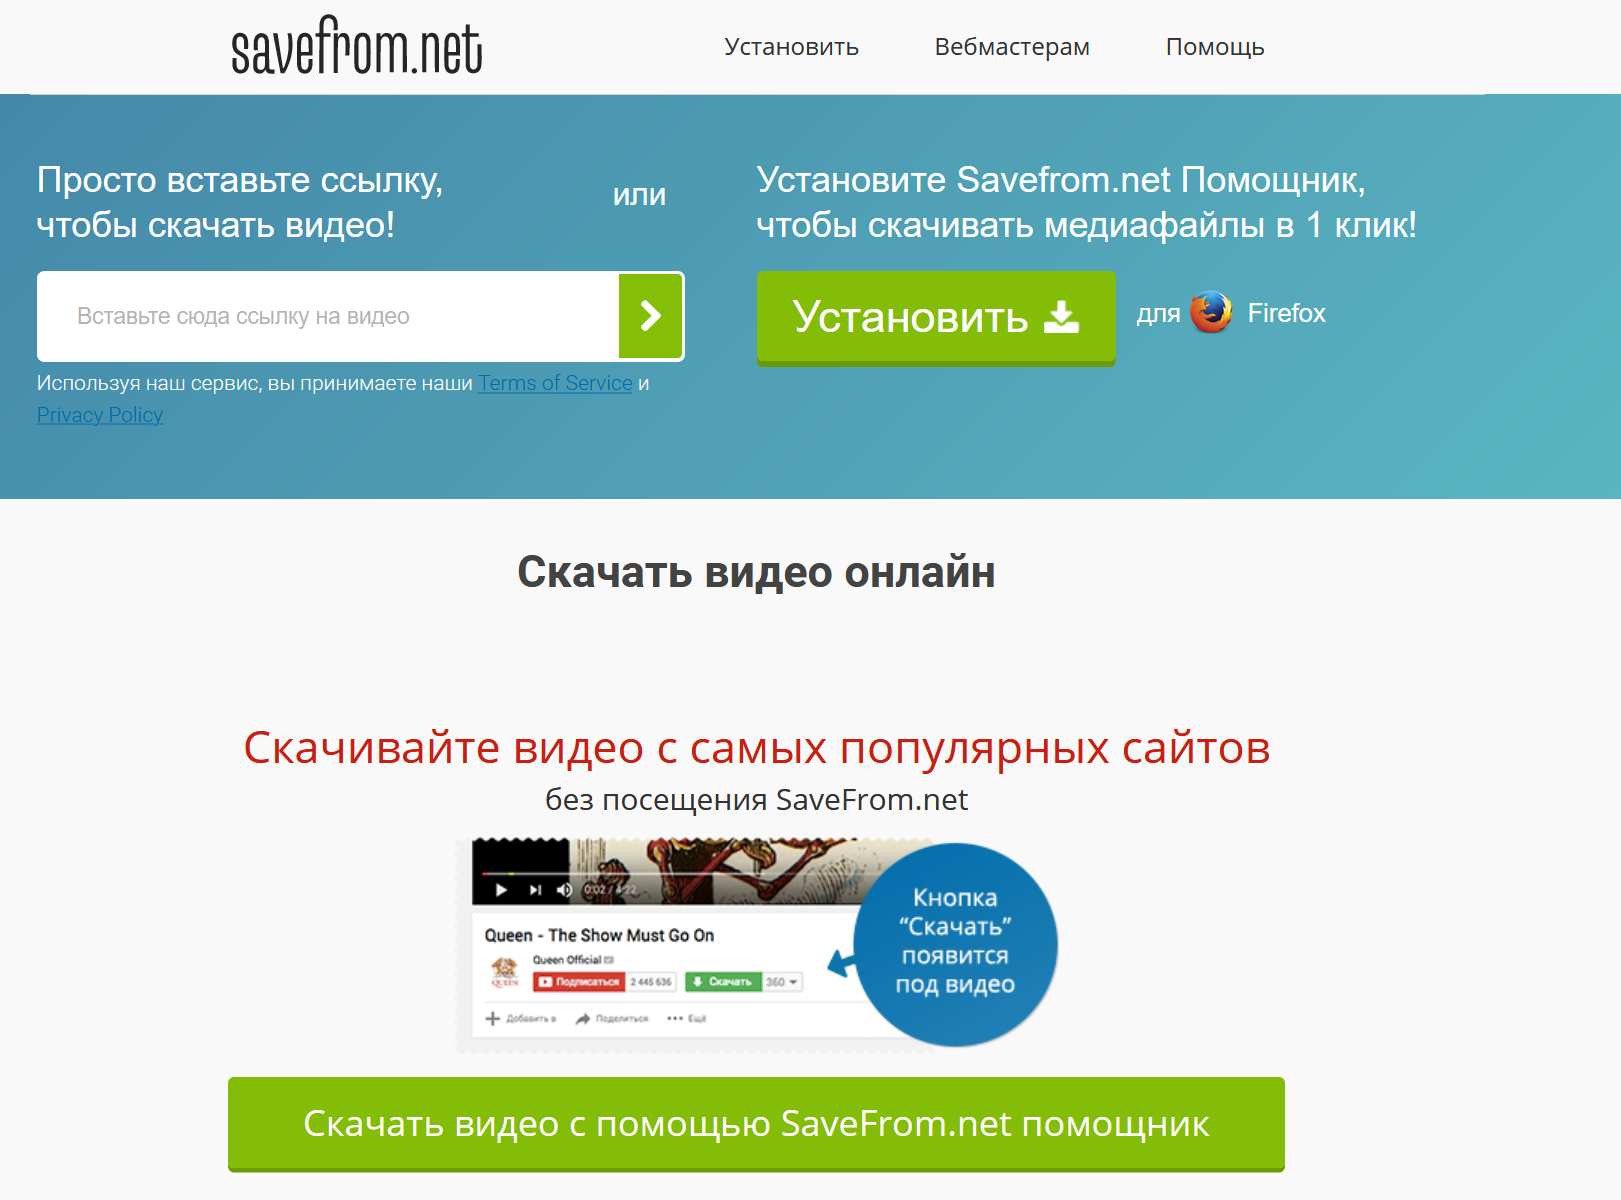 Все возможные способы скачать видео из ВКонтакте бесплатно